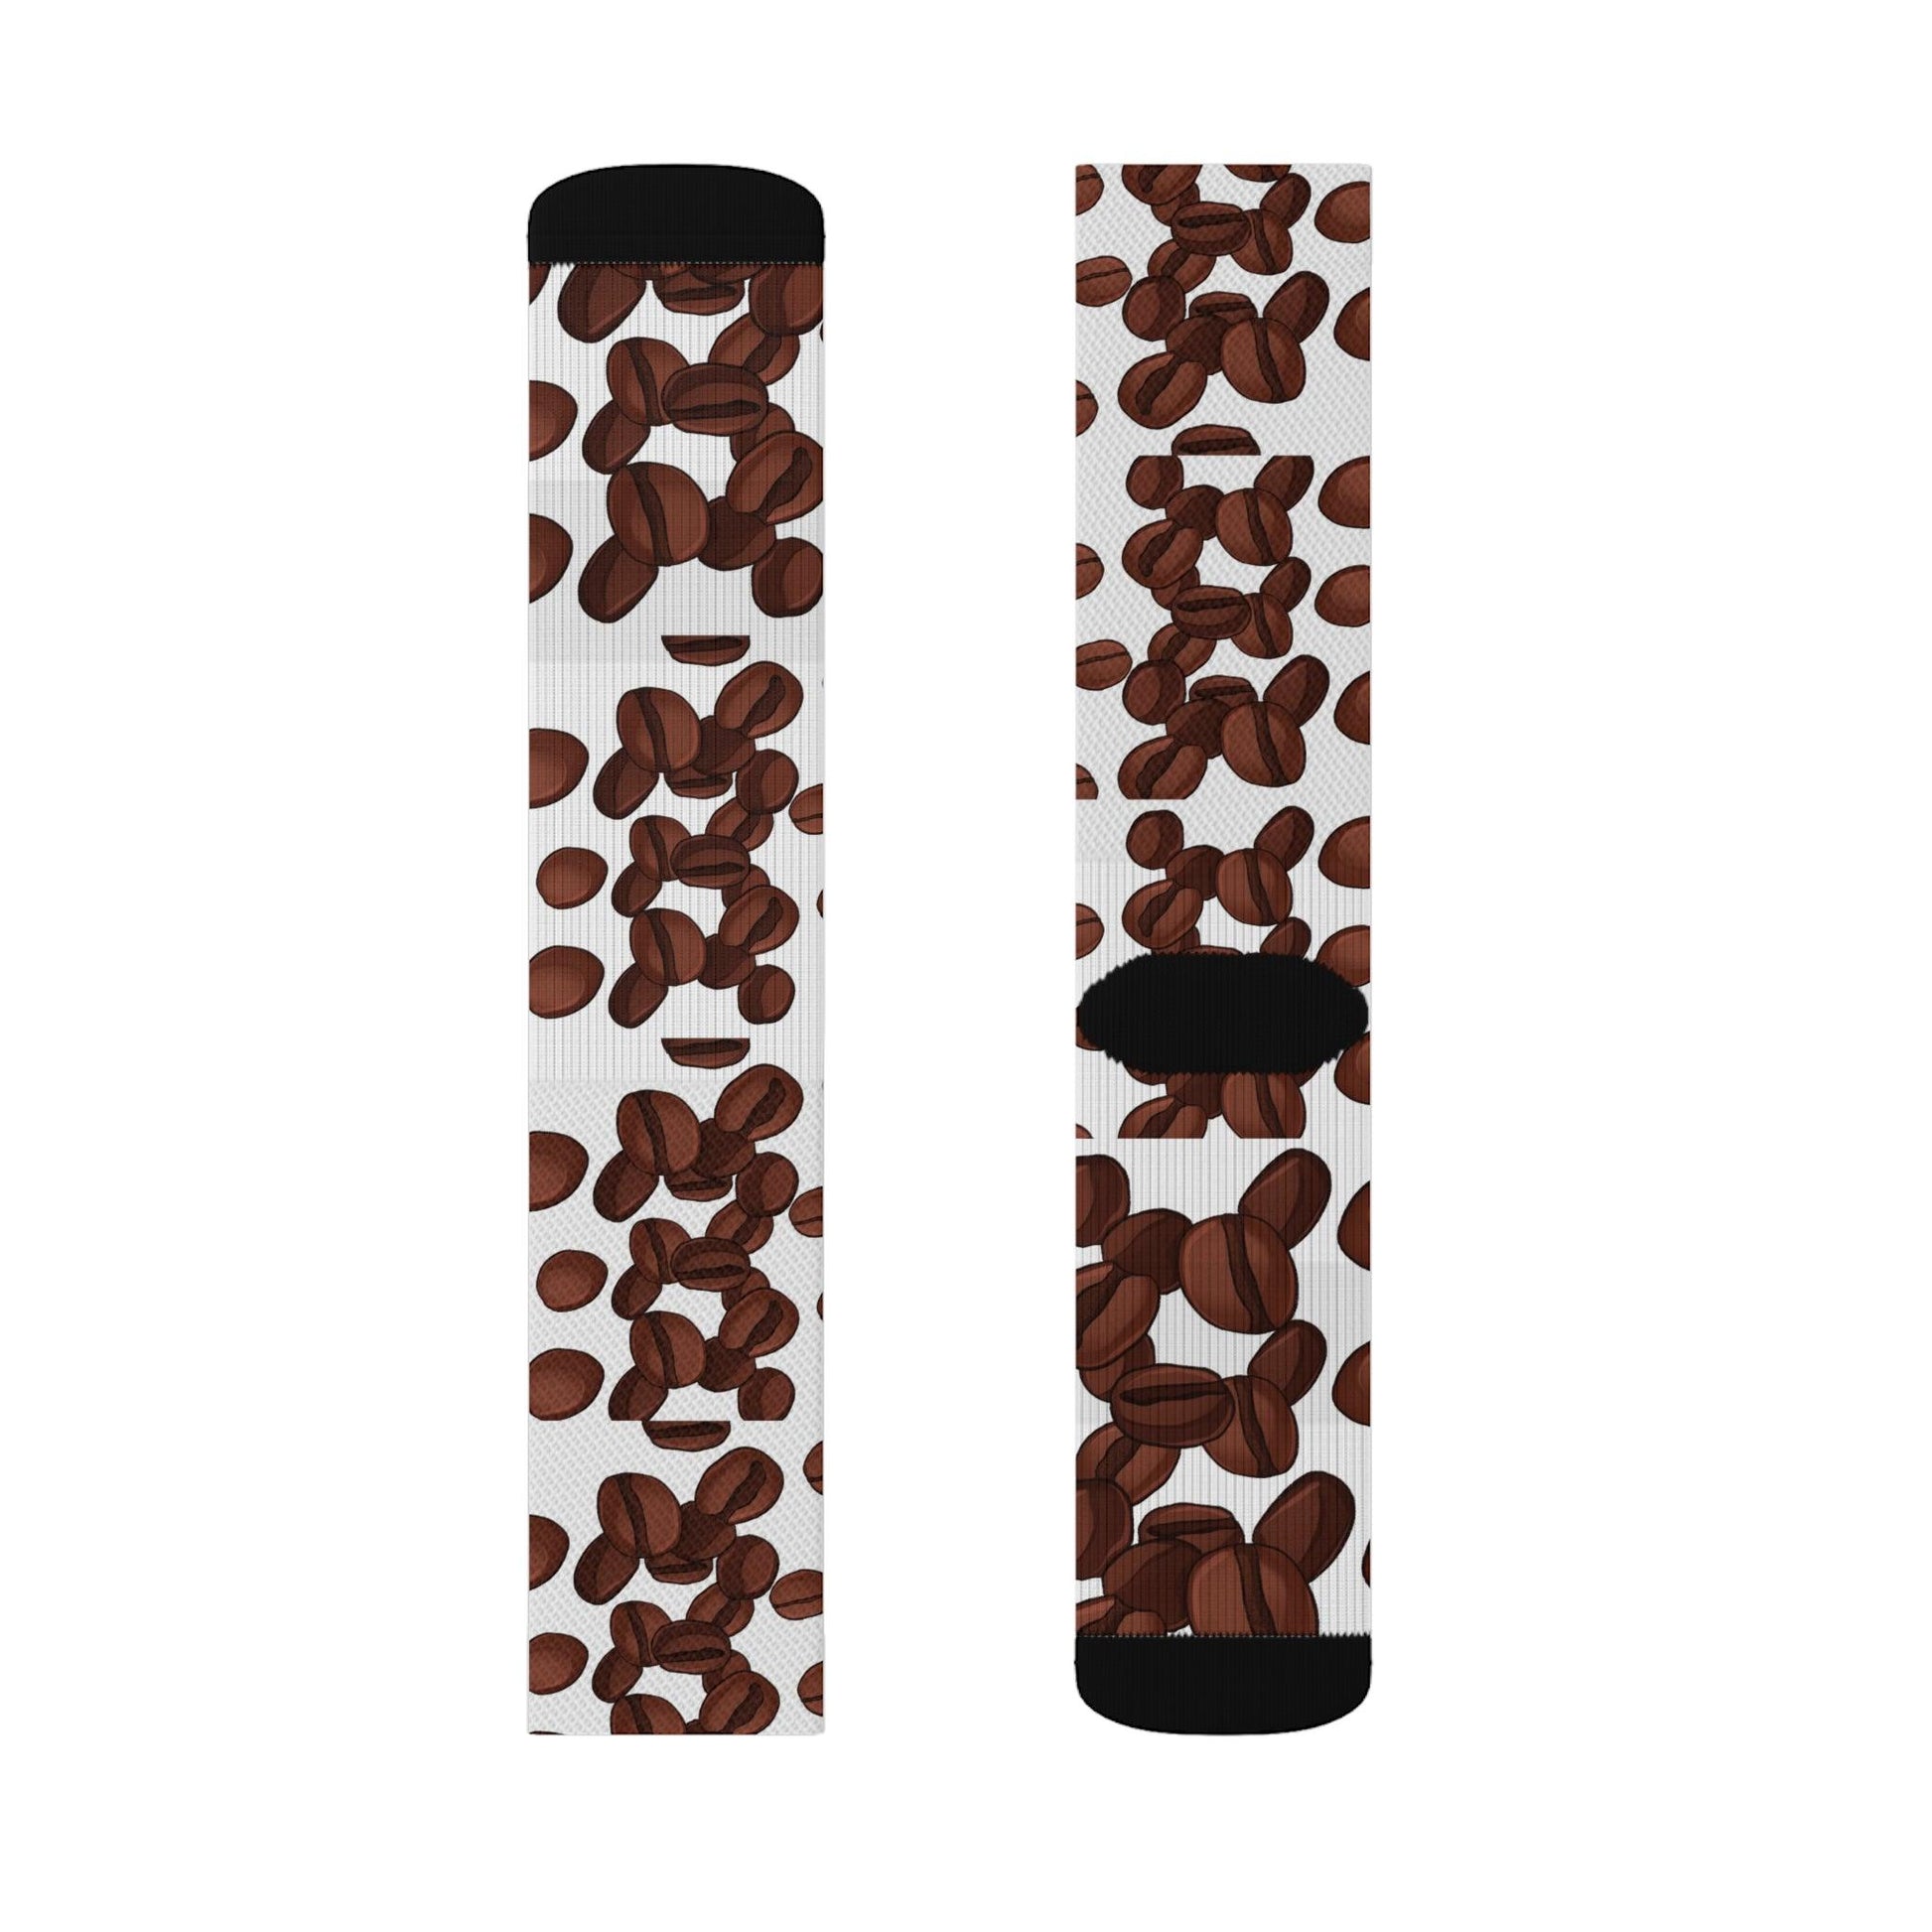 Giant Coffee Bean Socks gift